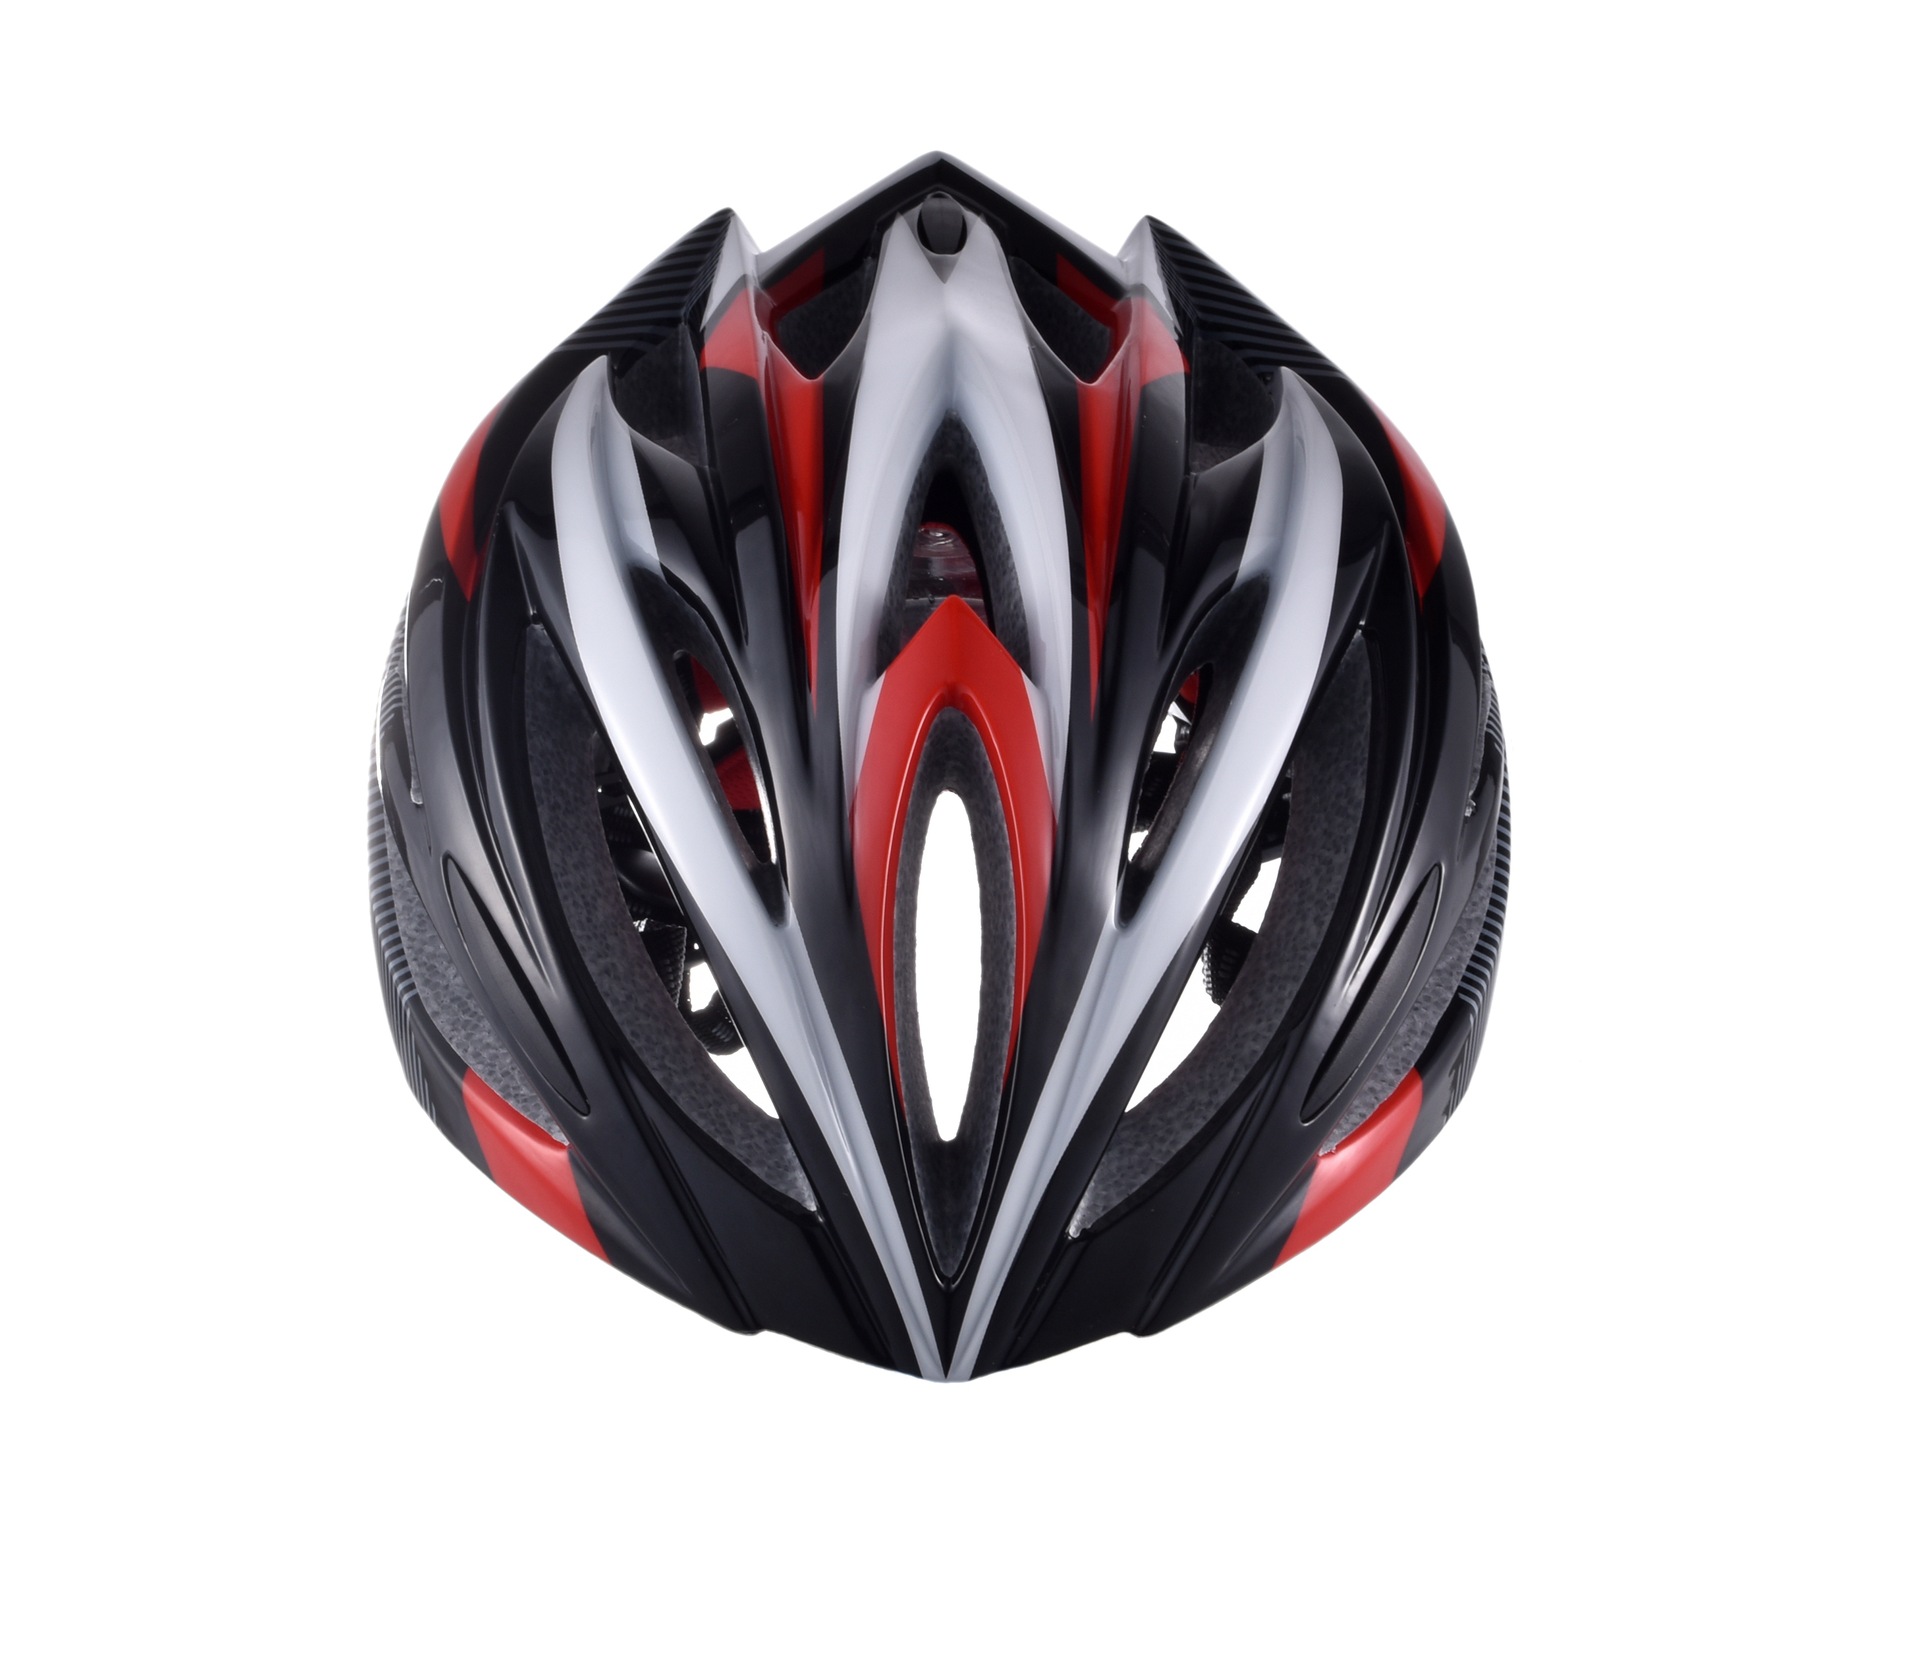 厂家直销超轻自行车头盔骑行头盔一体成型安全帽山地骑行頭盔3